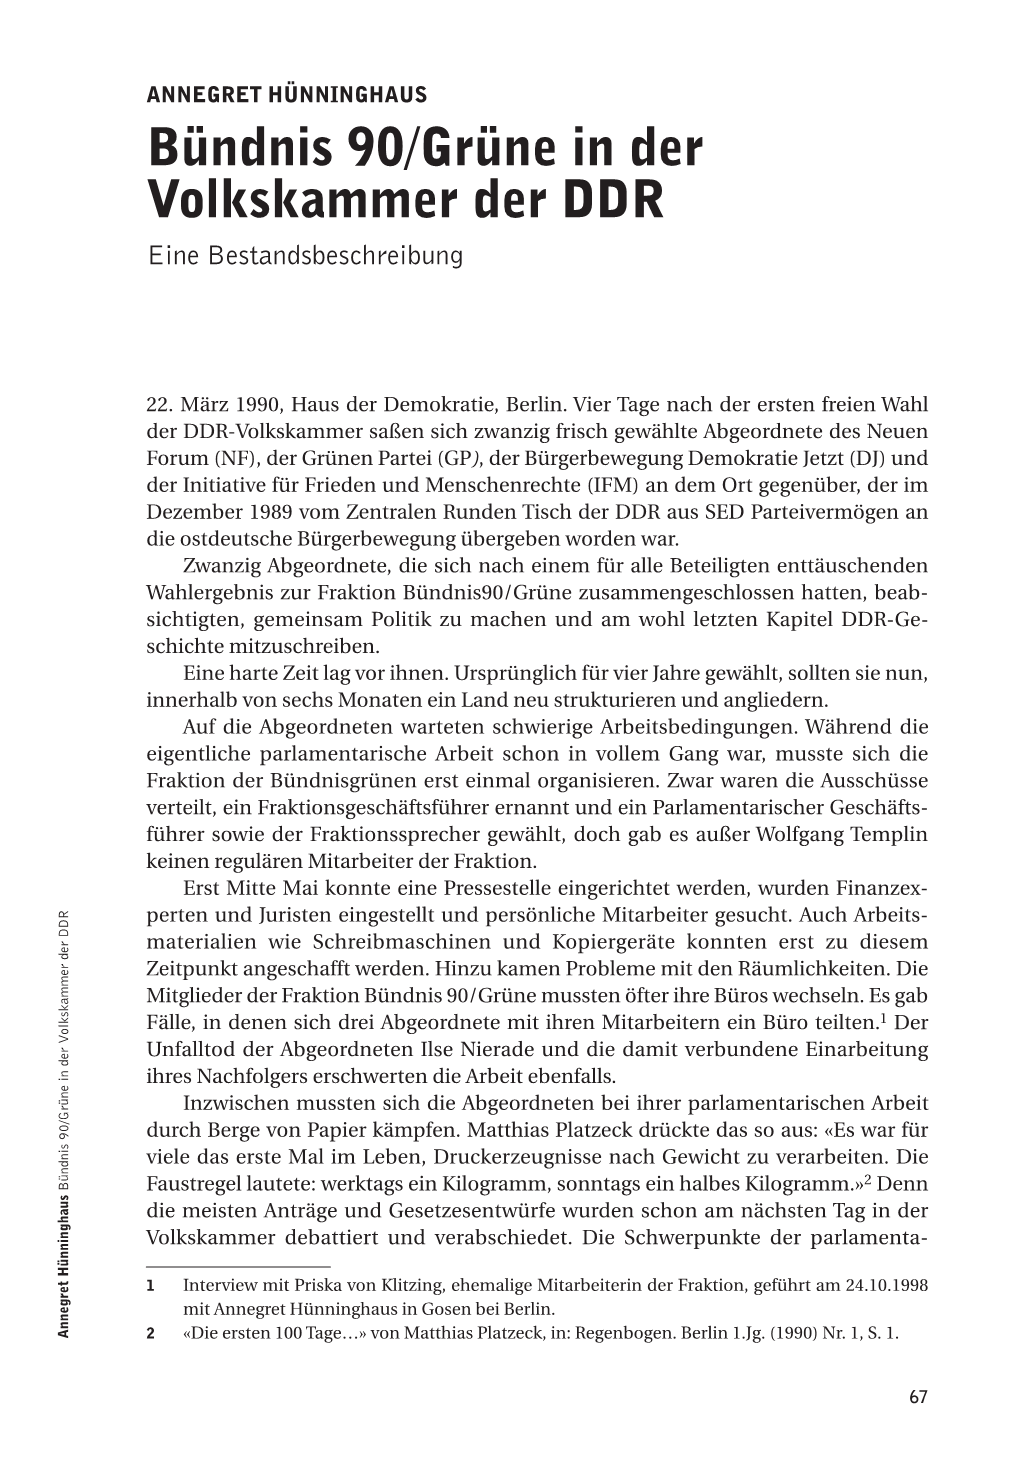 Bündnis 90/Grüne in Der Volkskammer Der DDR Okkme Dbtir Ud Eashee